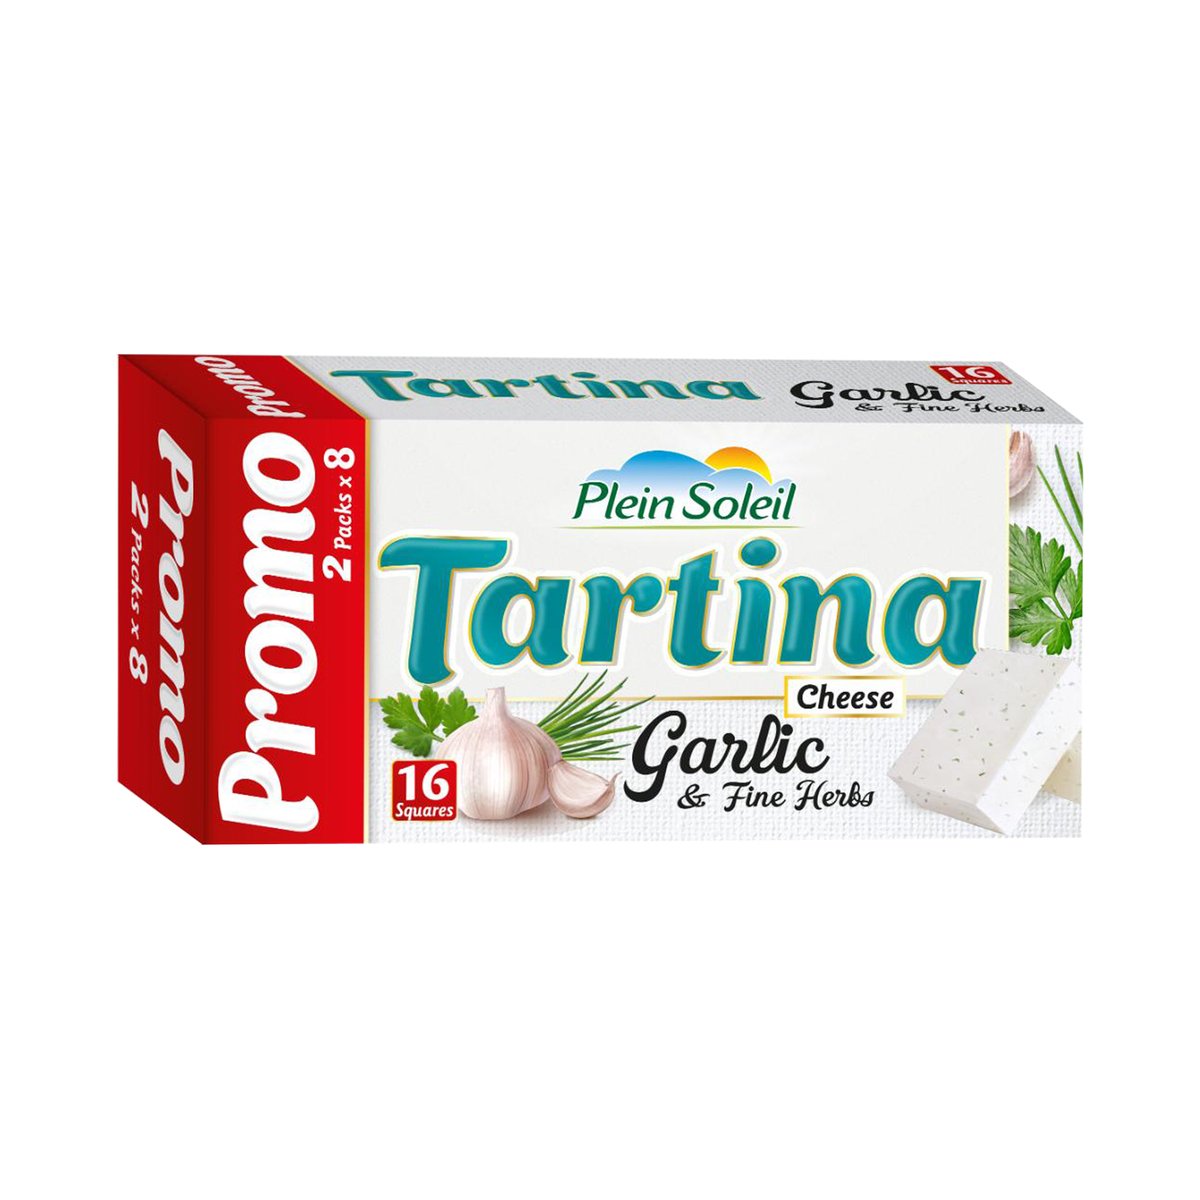 Plein Soleil Tartina Garlic Cheese 16 Portion 2 x 133 g